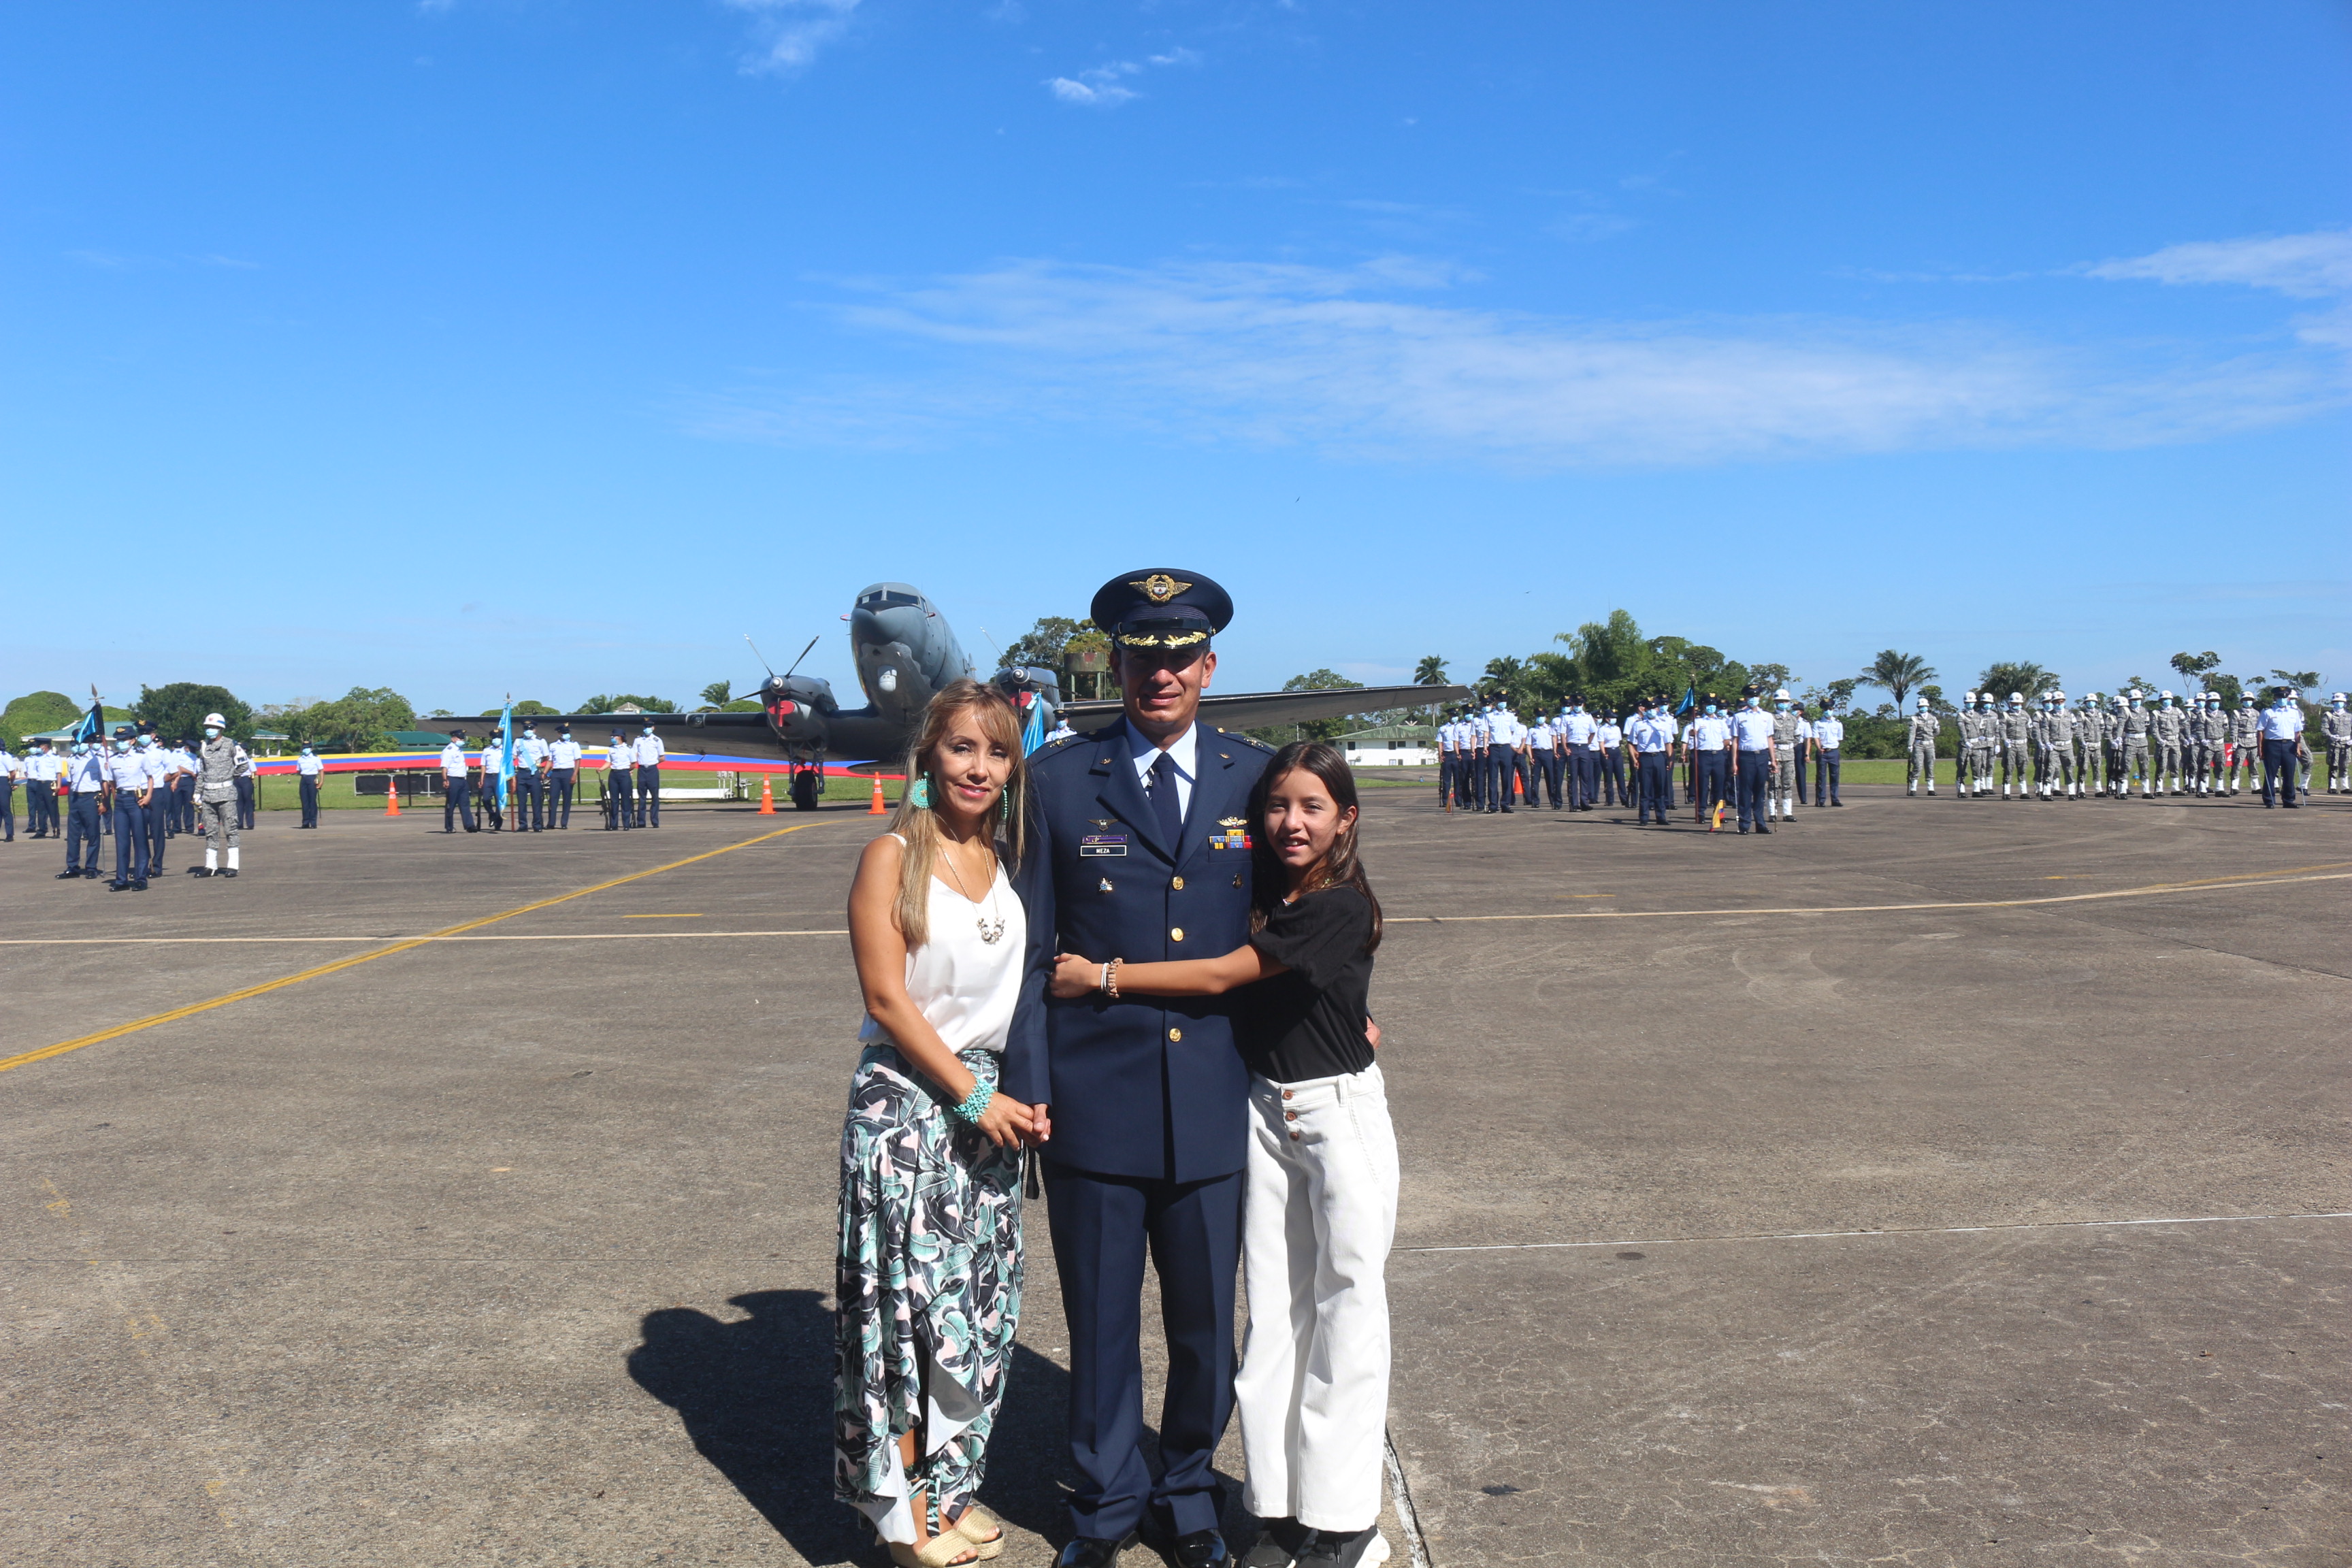 Nacido en Bogotá Cundinamarca, el 26 de marzo de 1976, el señor Coronel IVÁN MAURICIO  MEZA CUERVO es Oficial del curso No. 69 de su Fuerza Aérea Colombiana (FAC), es un oficial piloto con 27 años de servicio en la Institución. En su perfil profesional se destaca por su experiencia en Instrucción Básica y Avanzada de Vuelo, en Helicópteros y Planificación de Operaciones Aéreas.